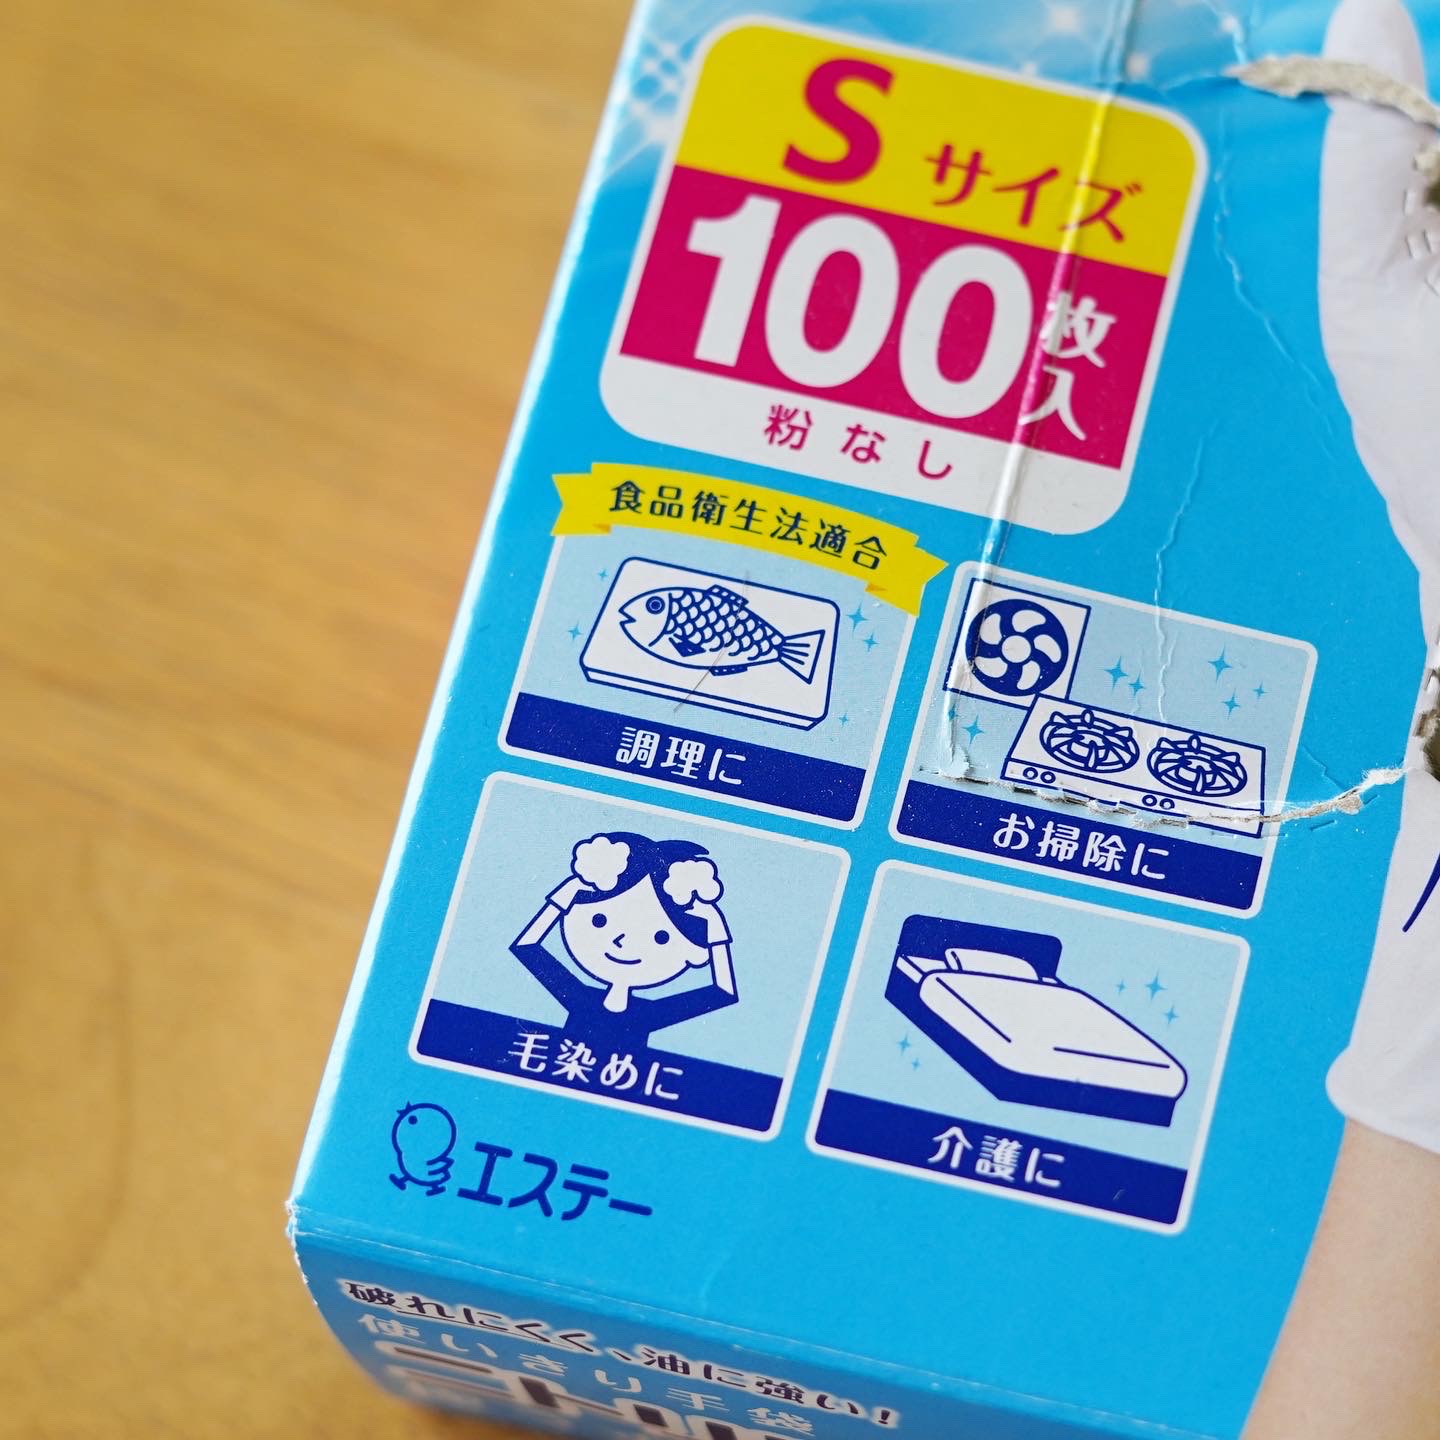 食品衛生法適合（粉なし）のニトリル手袋（Sサイズ100枚入り・白）の商品パッケージ